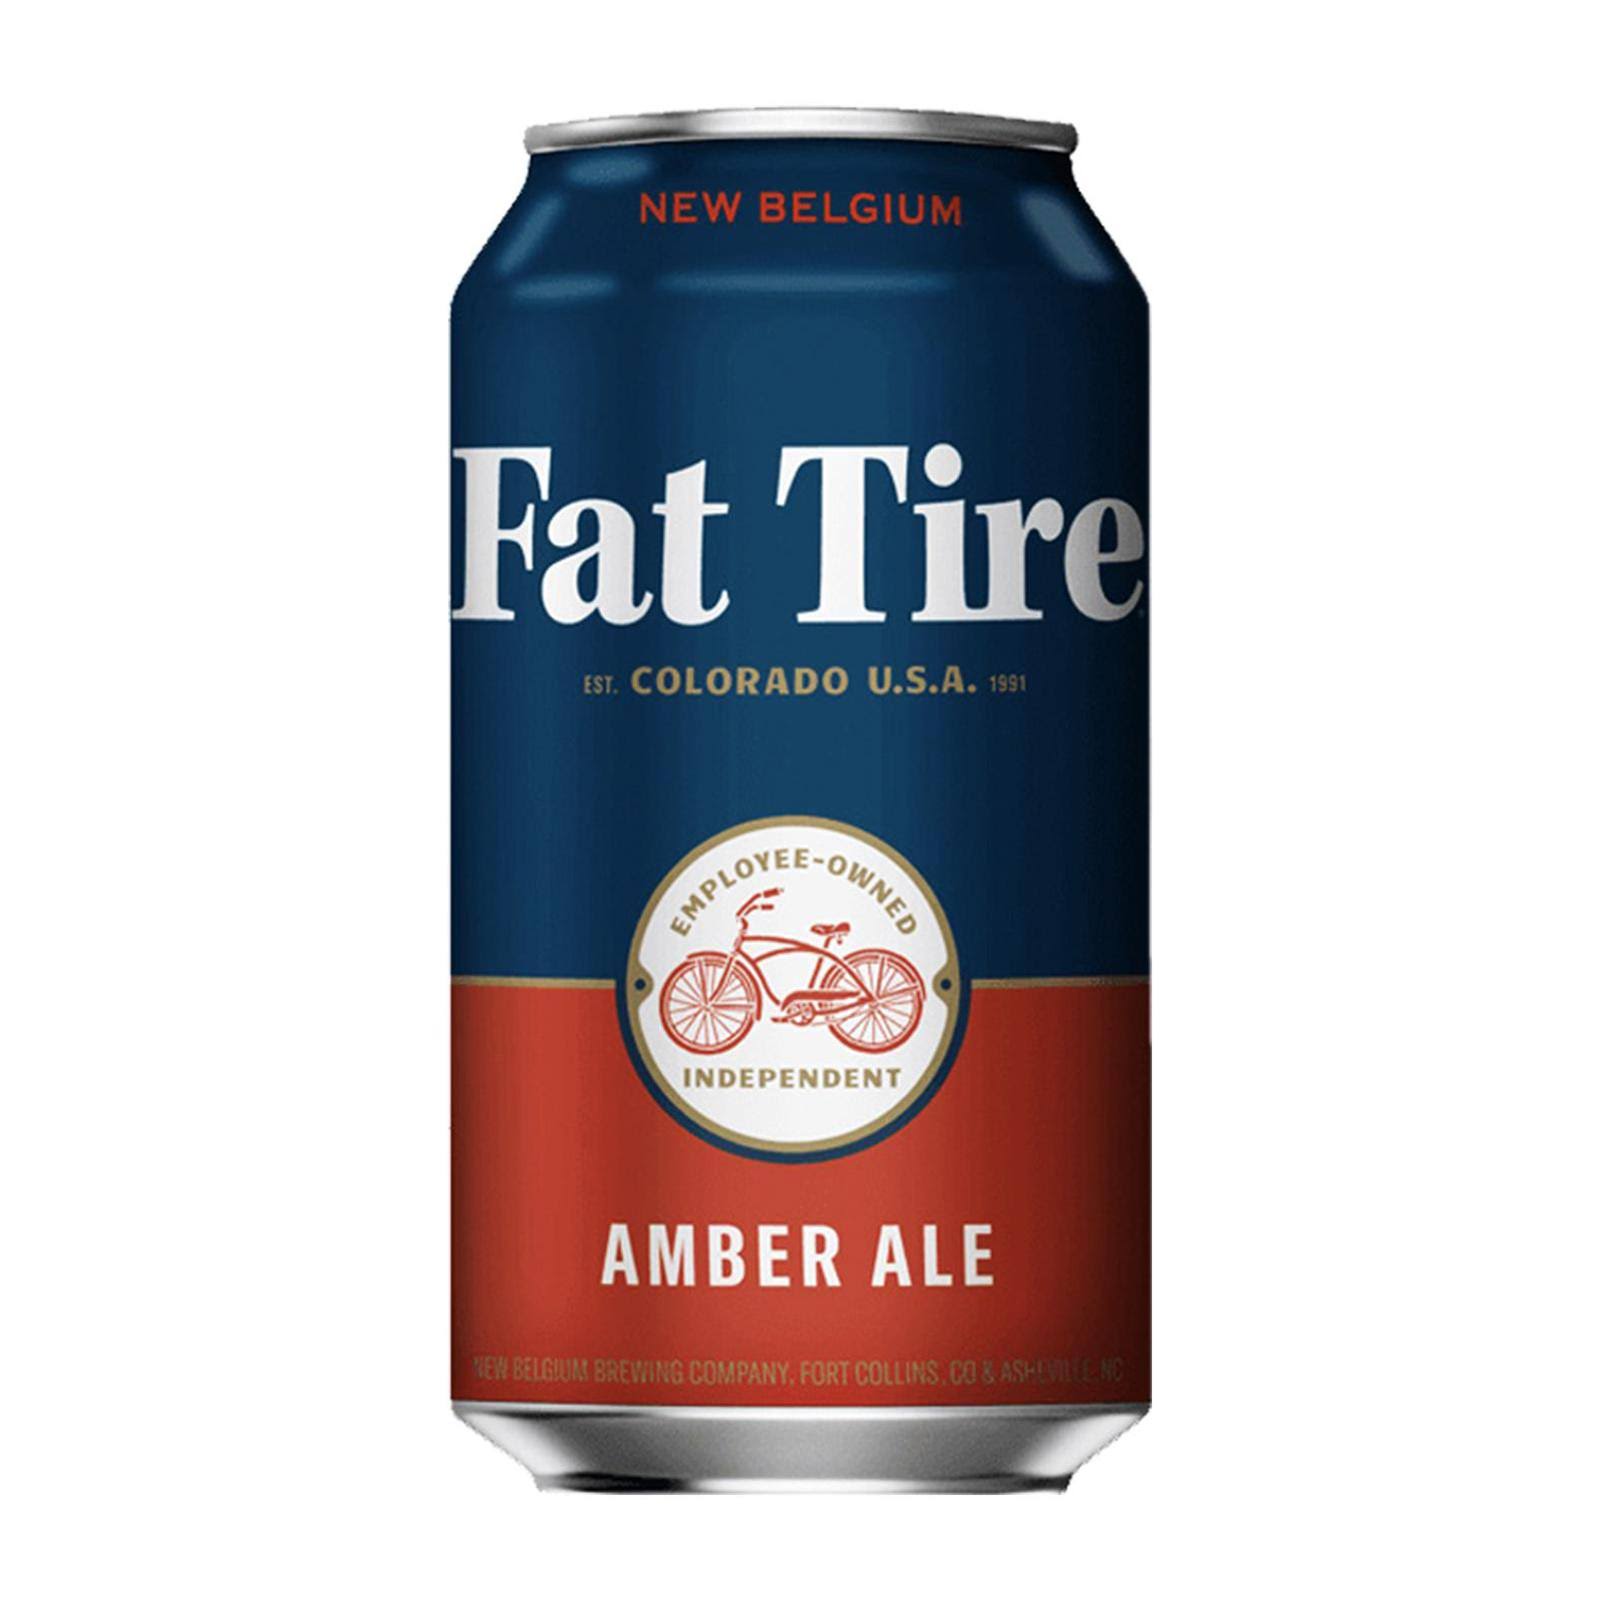 New Belgium Fat Tire Beer, Amber Ale - 12 fl oz